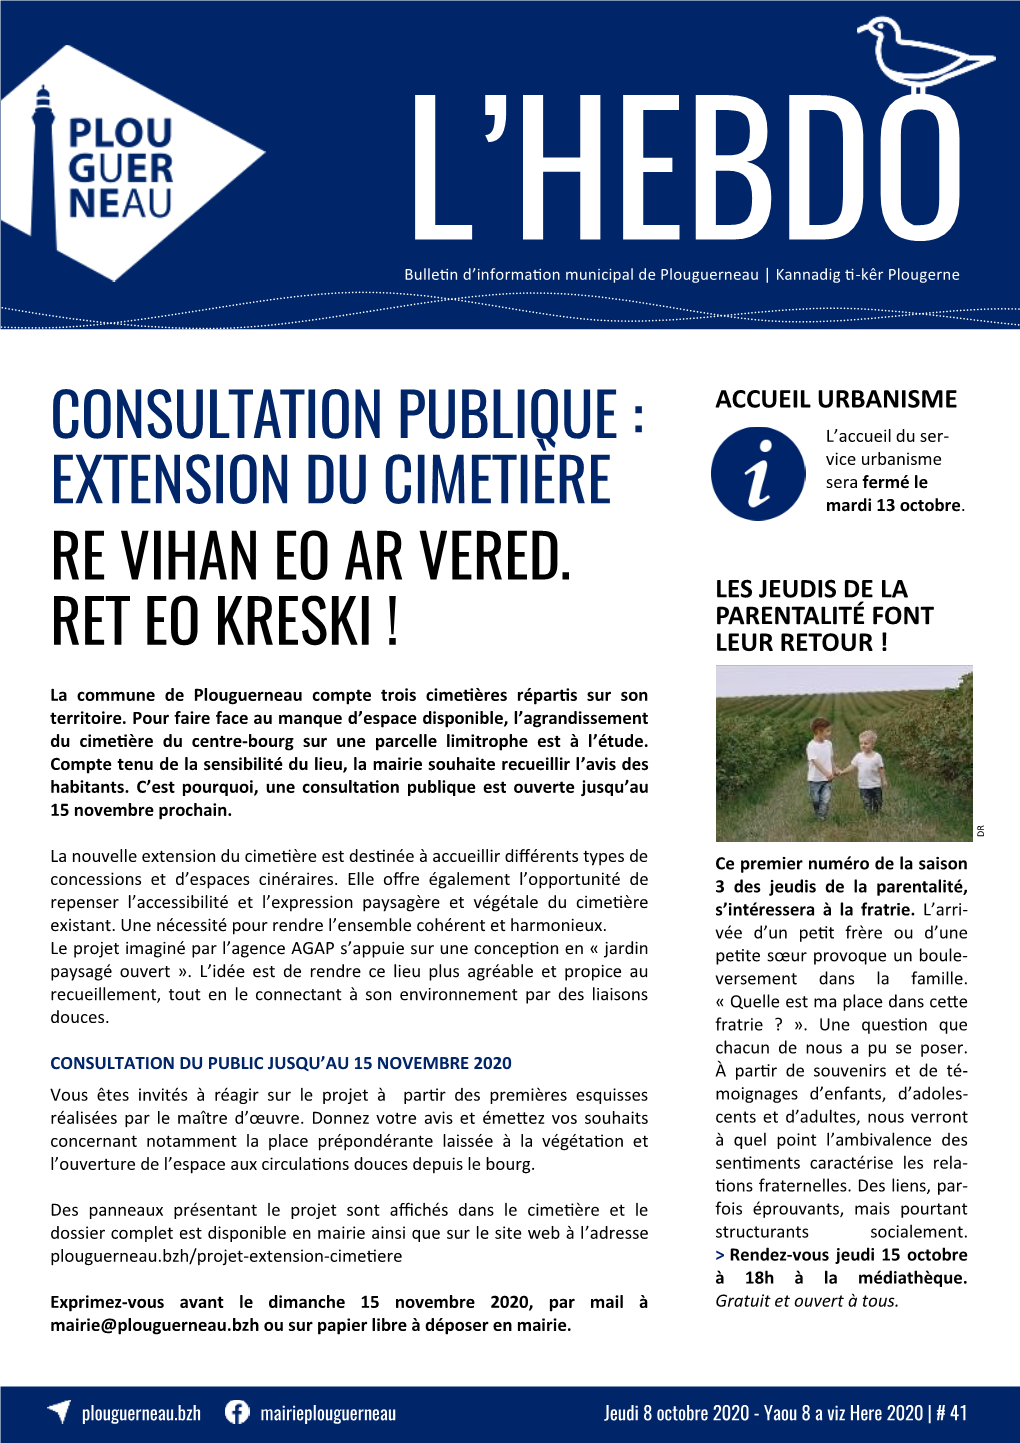 Consultation Publique : Extension Du Cimetière Re Vihan Eo Ar Vered. Ret Eo Kreski